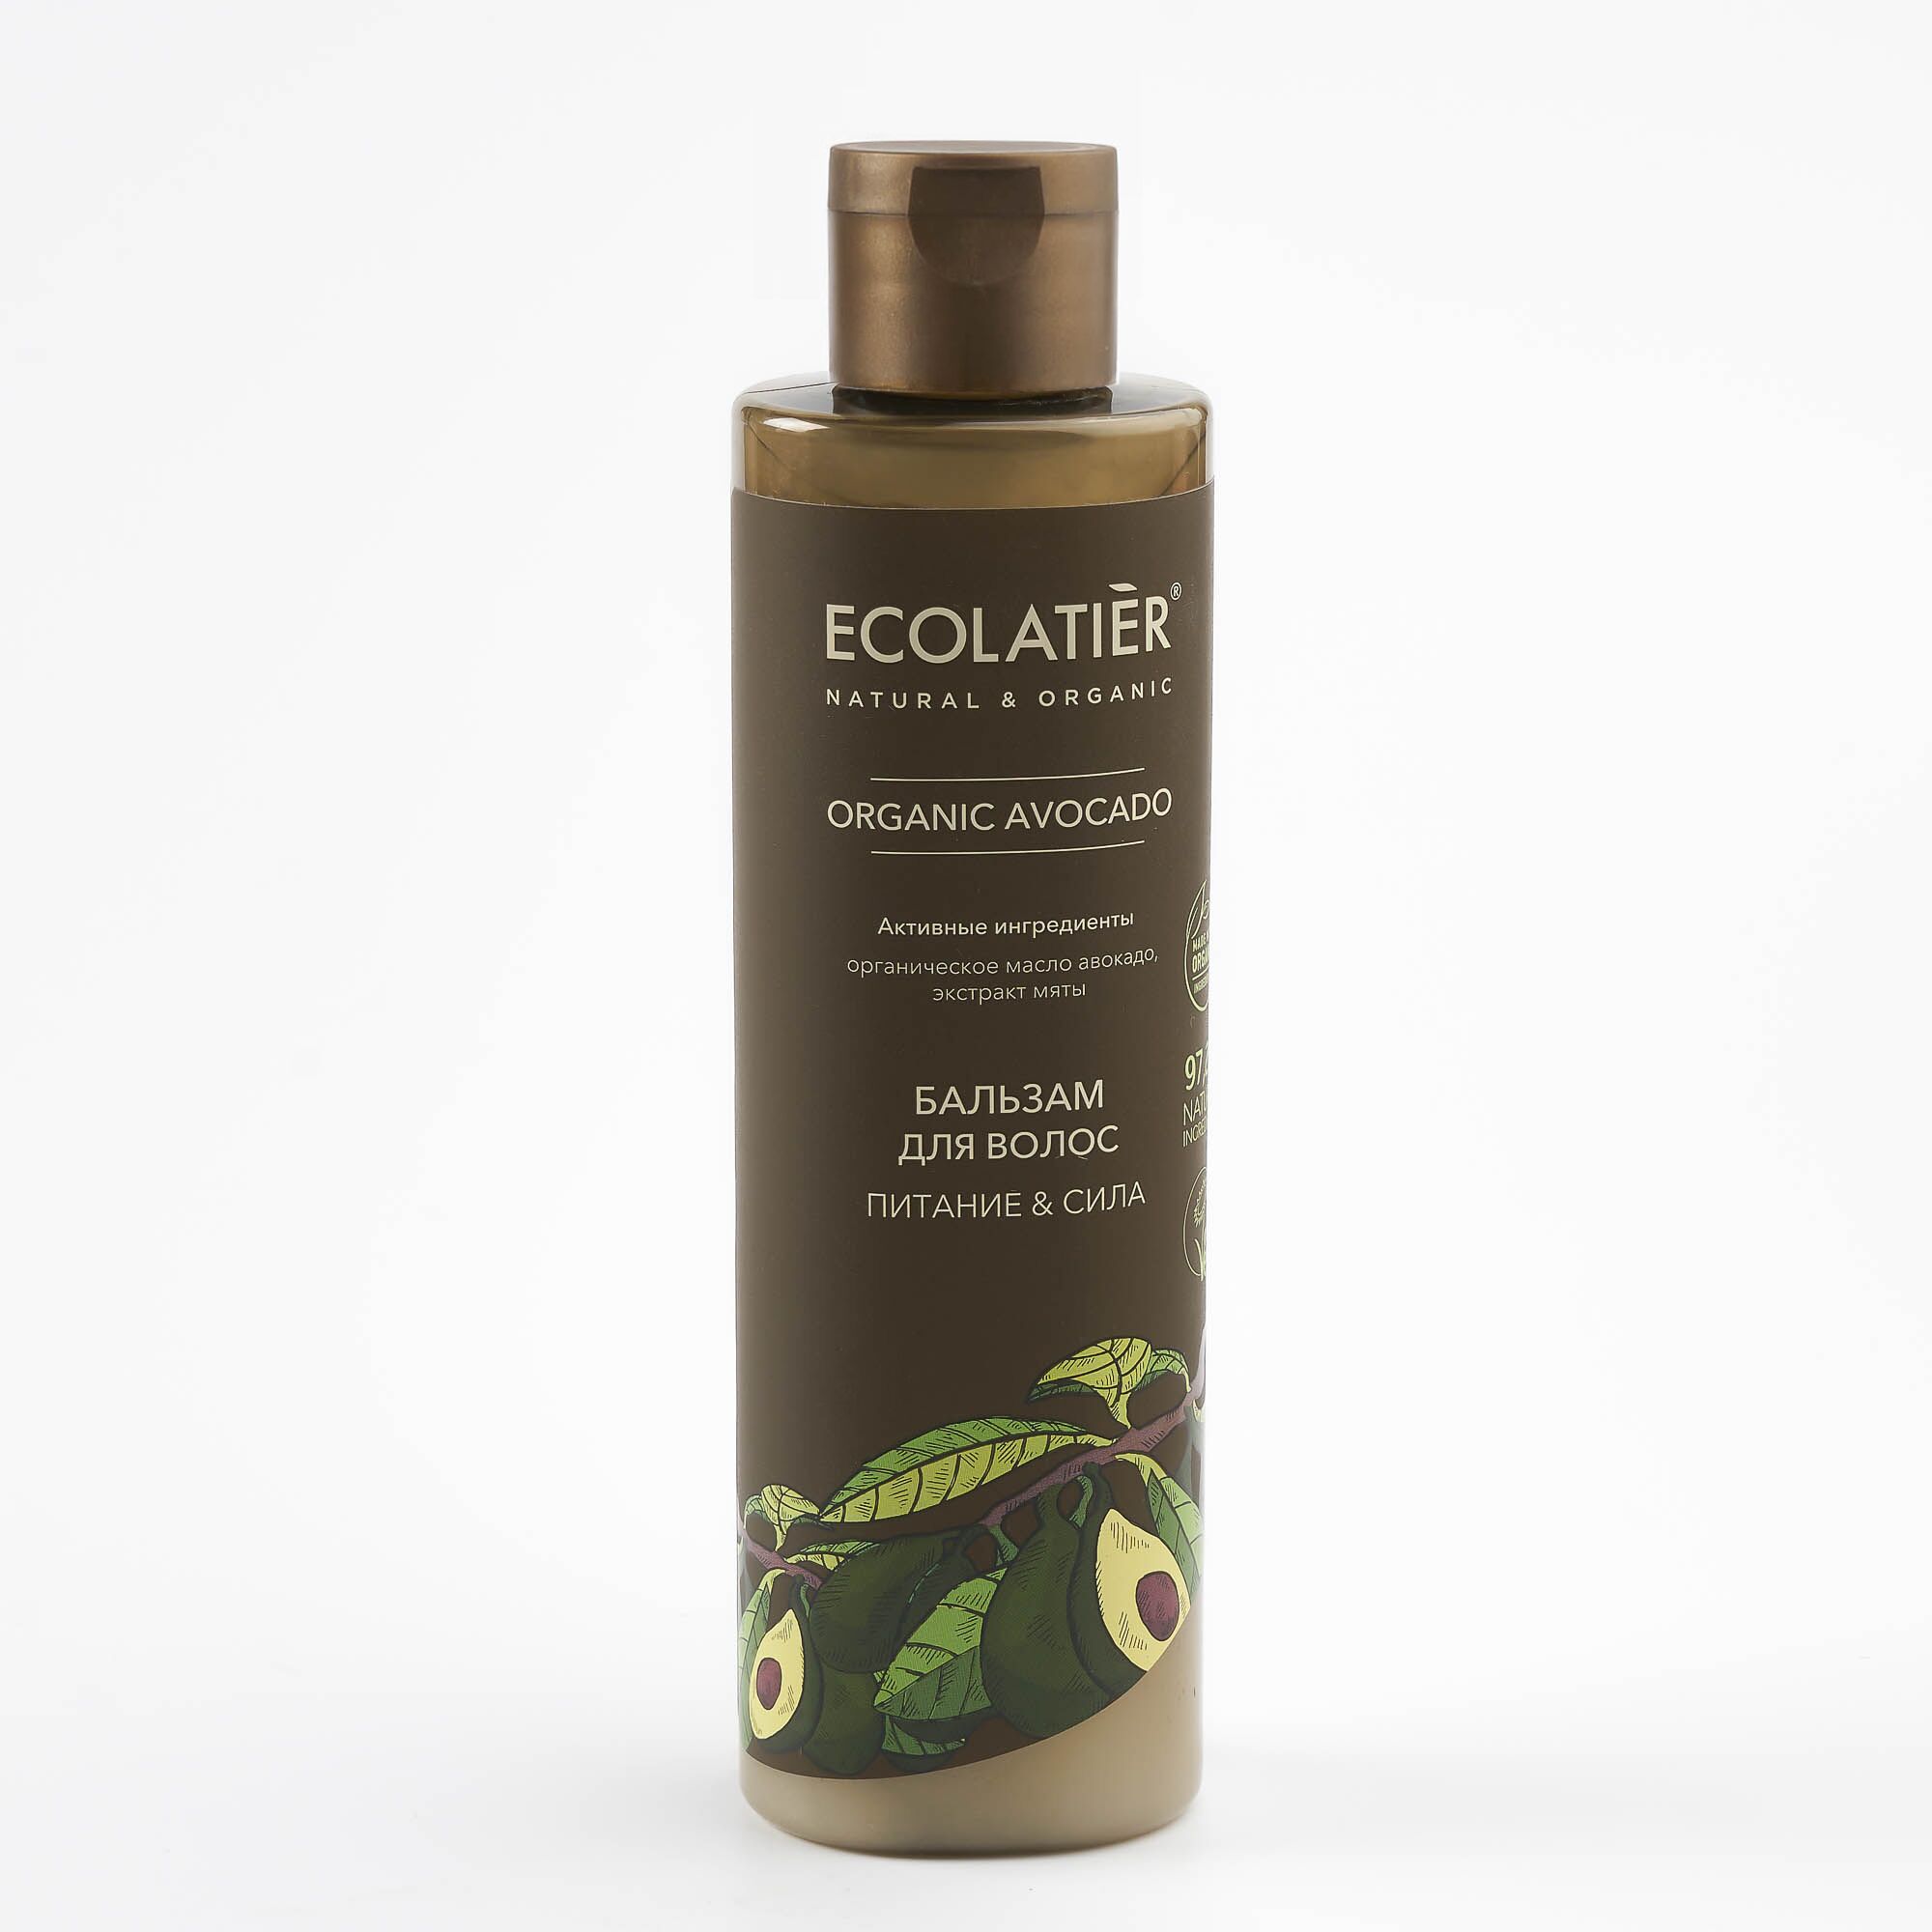 Ecolatier Бальзам для волос Питание и сила Organic Avocado